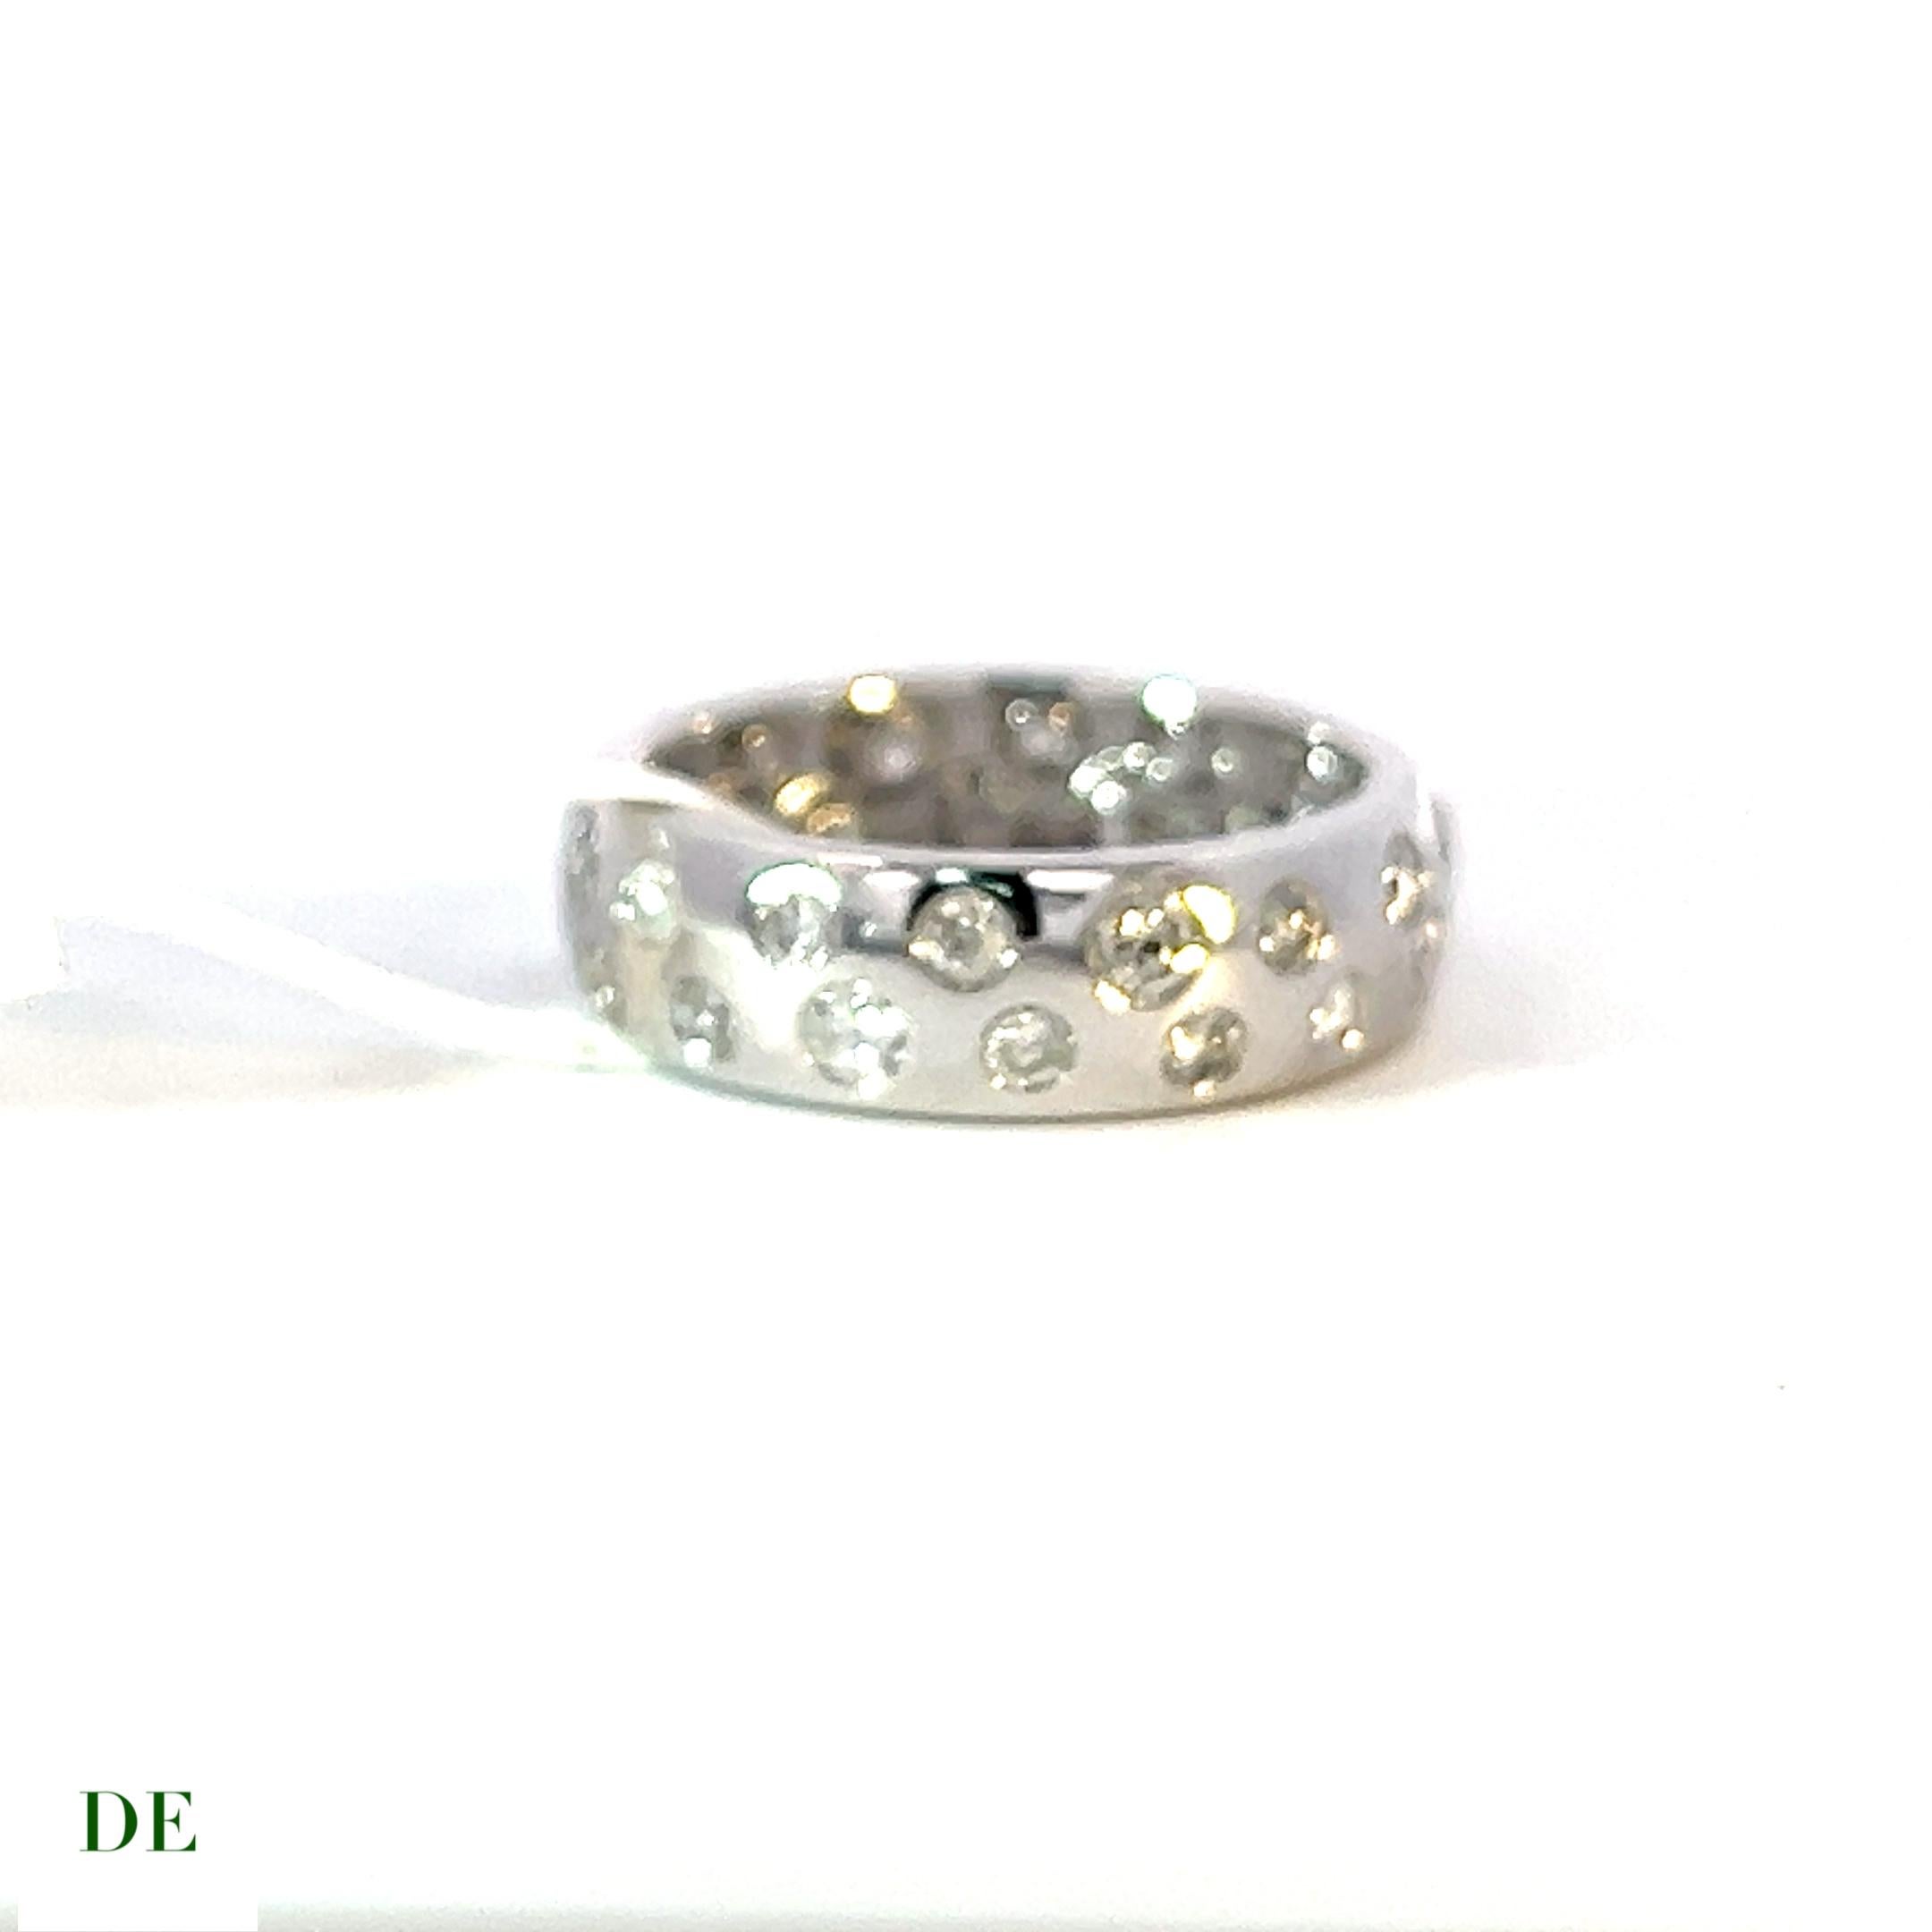 Exklusiver 14k Weißgold 1,27 Karat Polkadot Weißer Diamant-Ring

Wir stellen den exklusiven Polkadot White Diamond Band Ring aus 14k Weißgold vor, ein wirklich außergewöhnliches Stück, das Eleganz und Raffinesse ausstrahlt. Dieser bezaubernde Ring